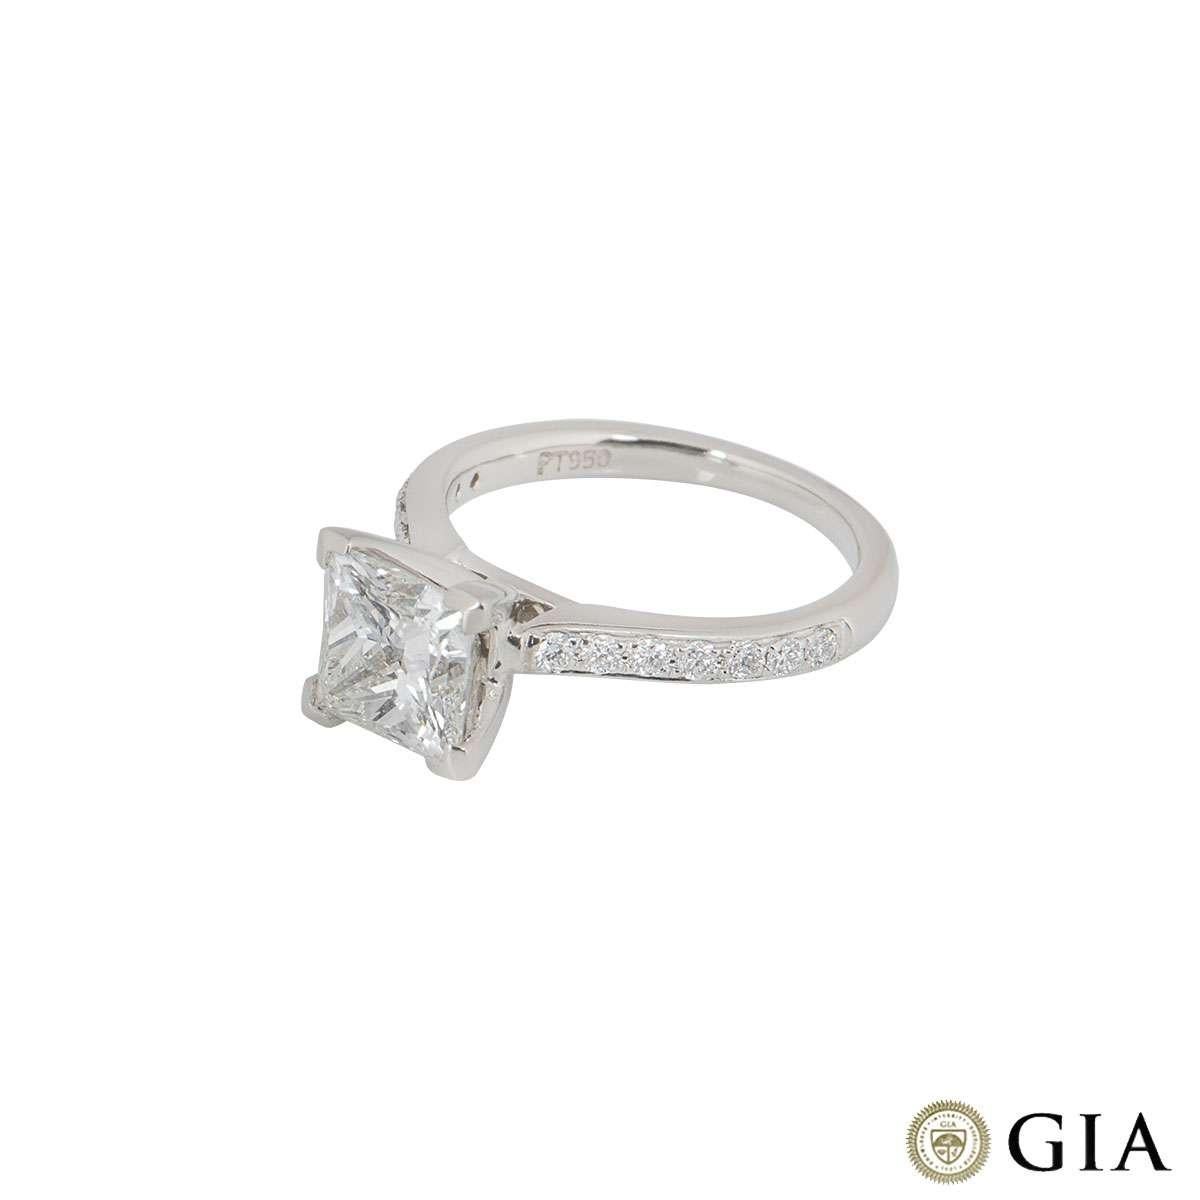 Women's GIA Certified Princess Cut Diamond Ring in Platinum 2.02 Carat